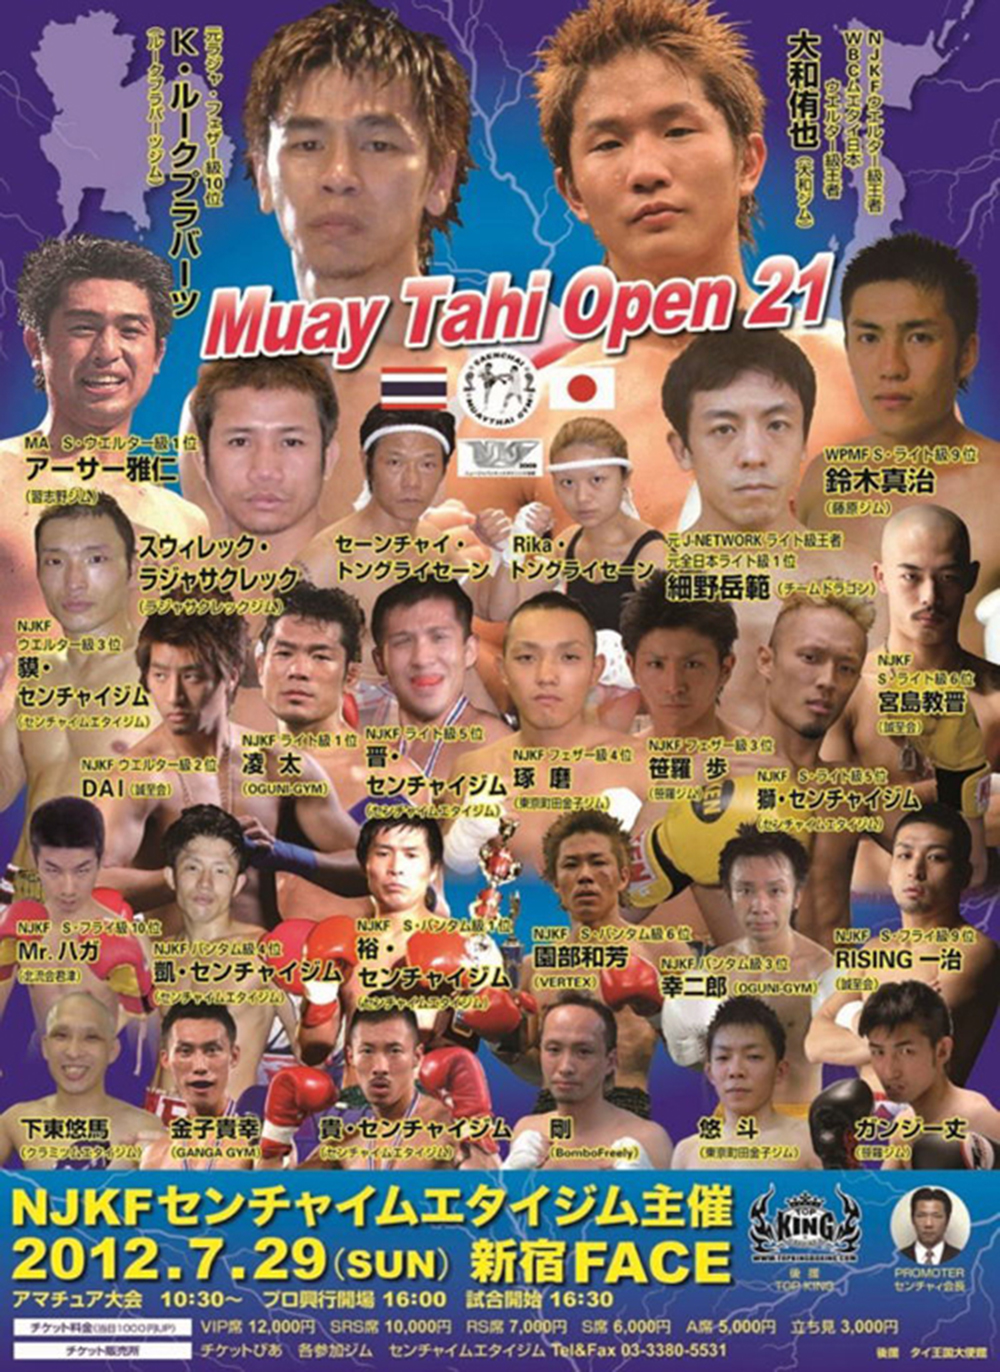 Muay Thai Open 21